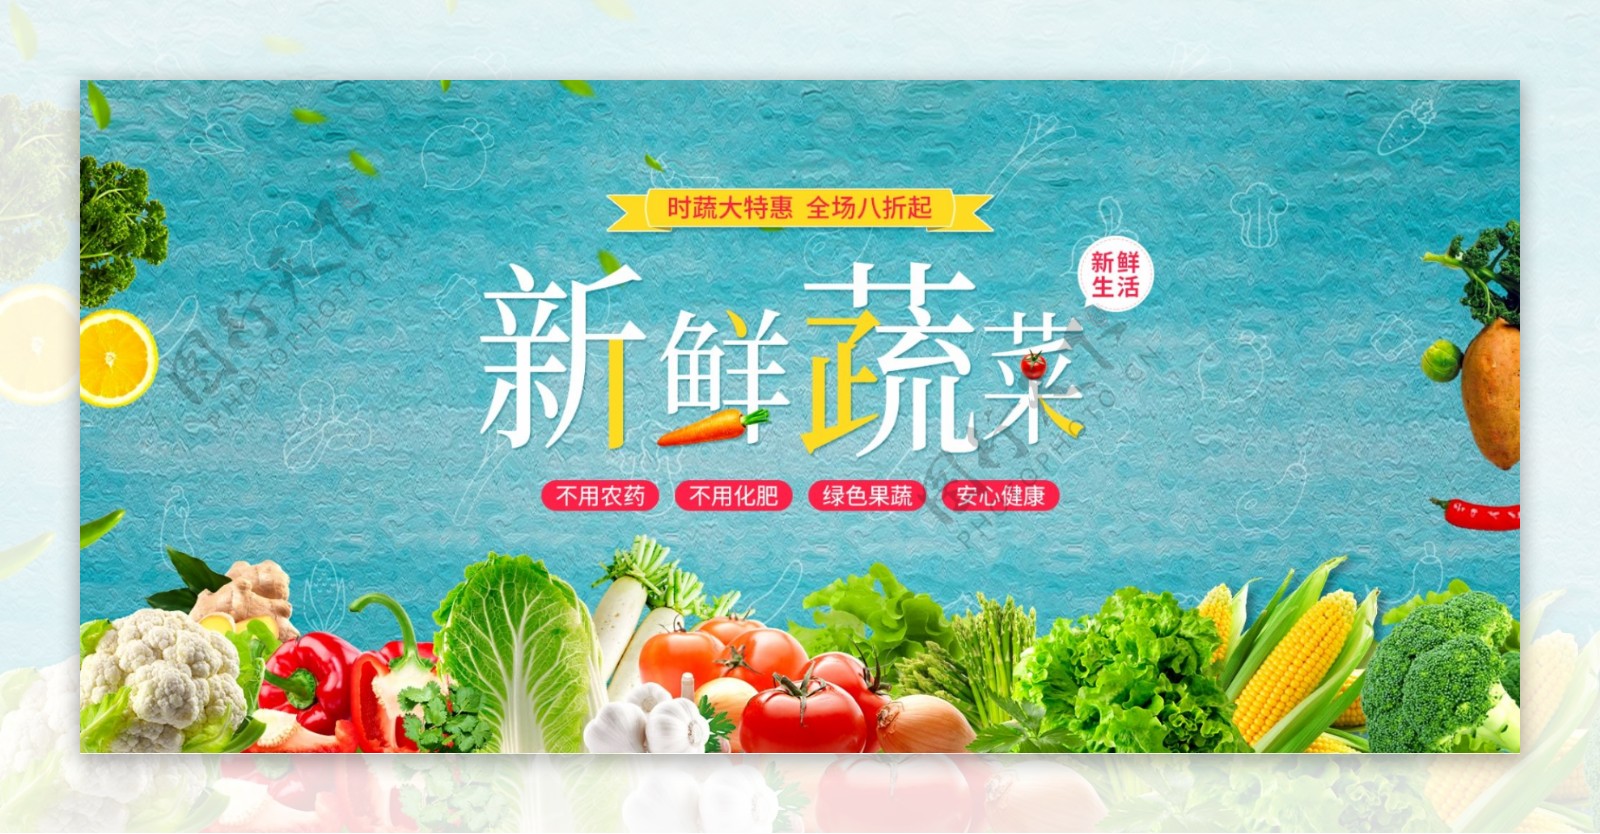 蔬菜淘宝天猫电商banner模板蓝色清新